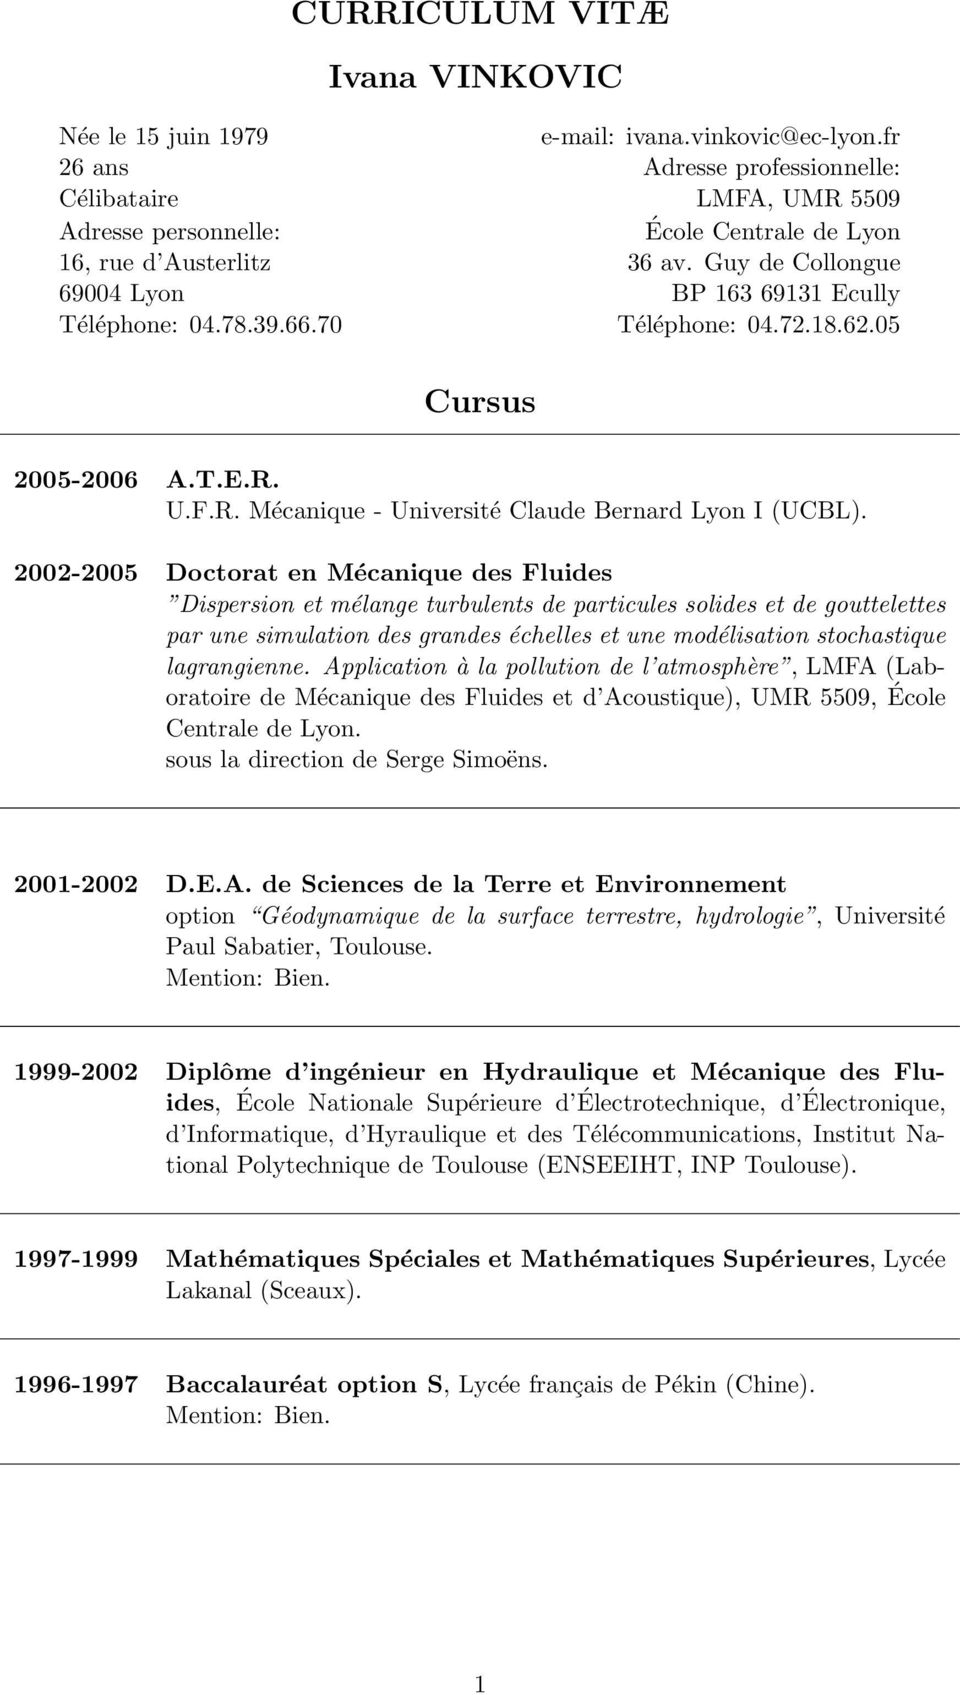 39.66.70 Téléphone: 04.72.18.62.05 Cursus 2005-2006 A.T.E.R. U.F.R. Mécanique - Université Claude Bernard Lyon I (UCBL).